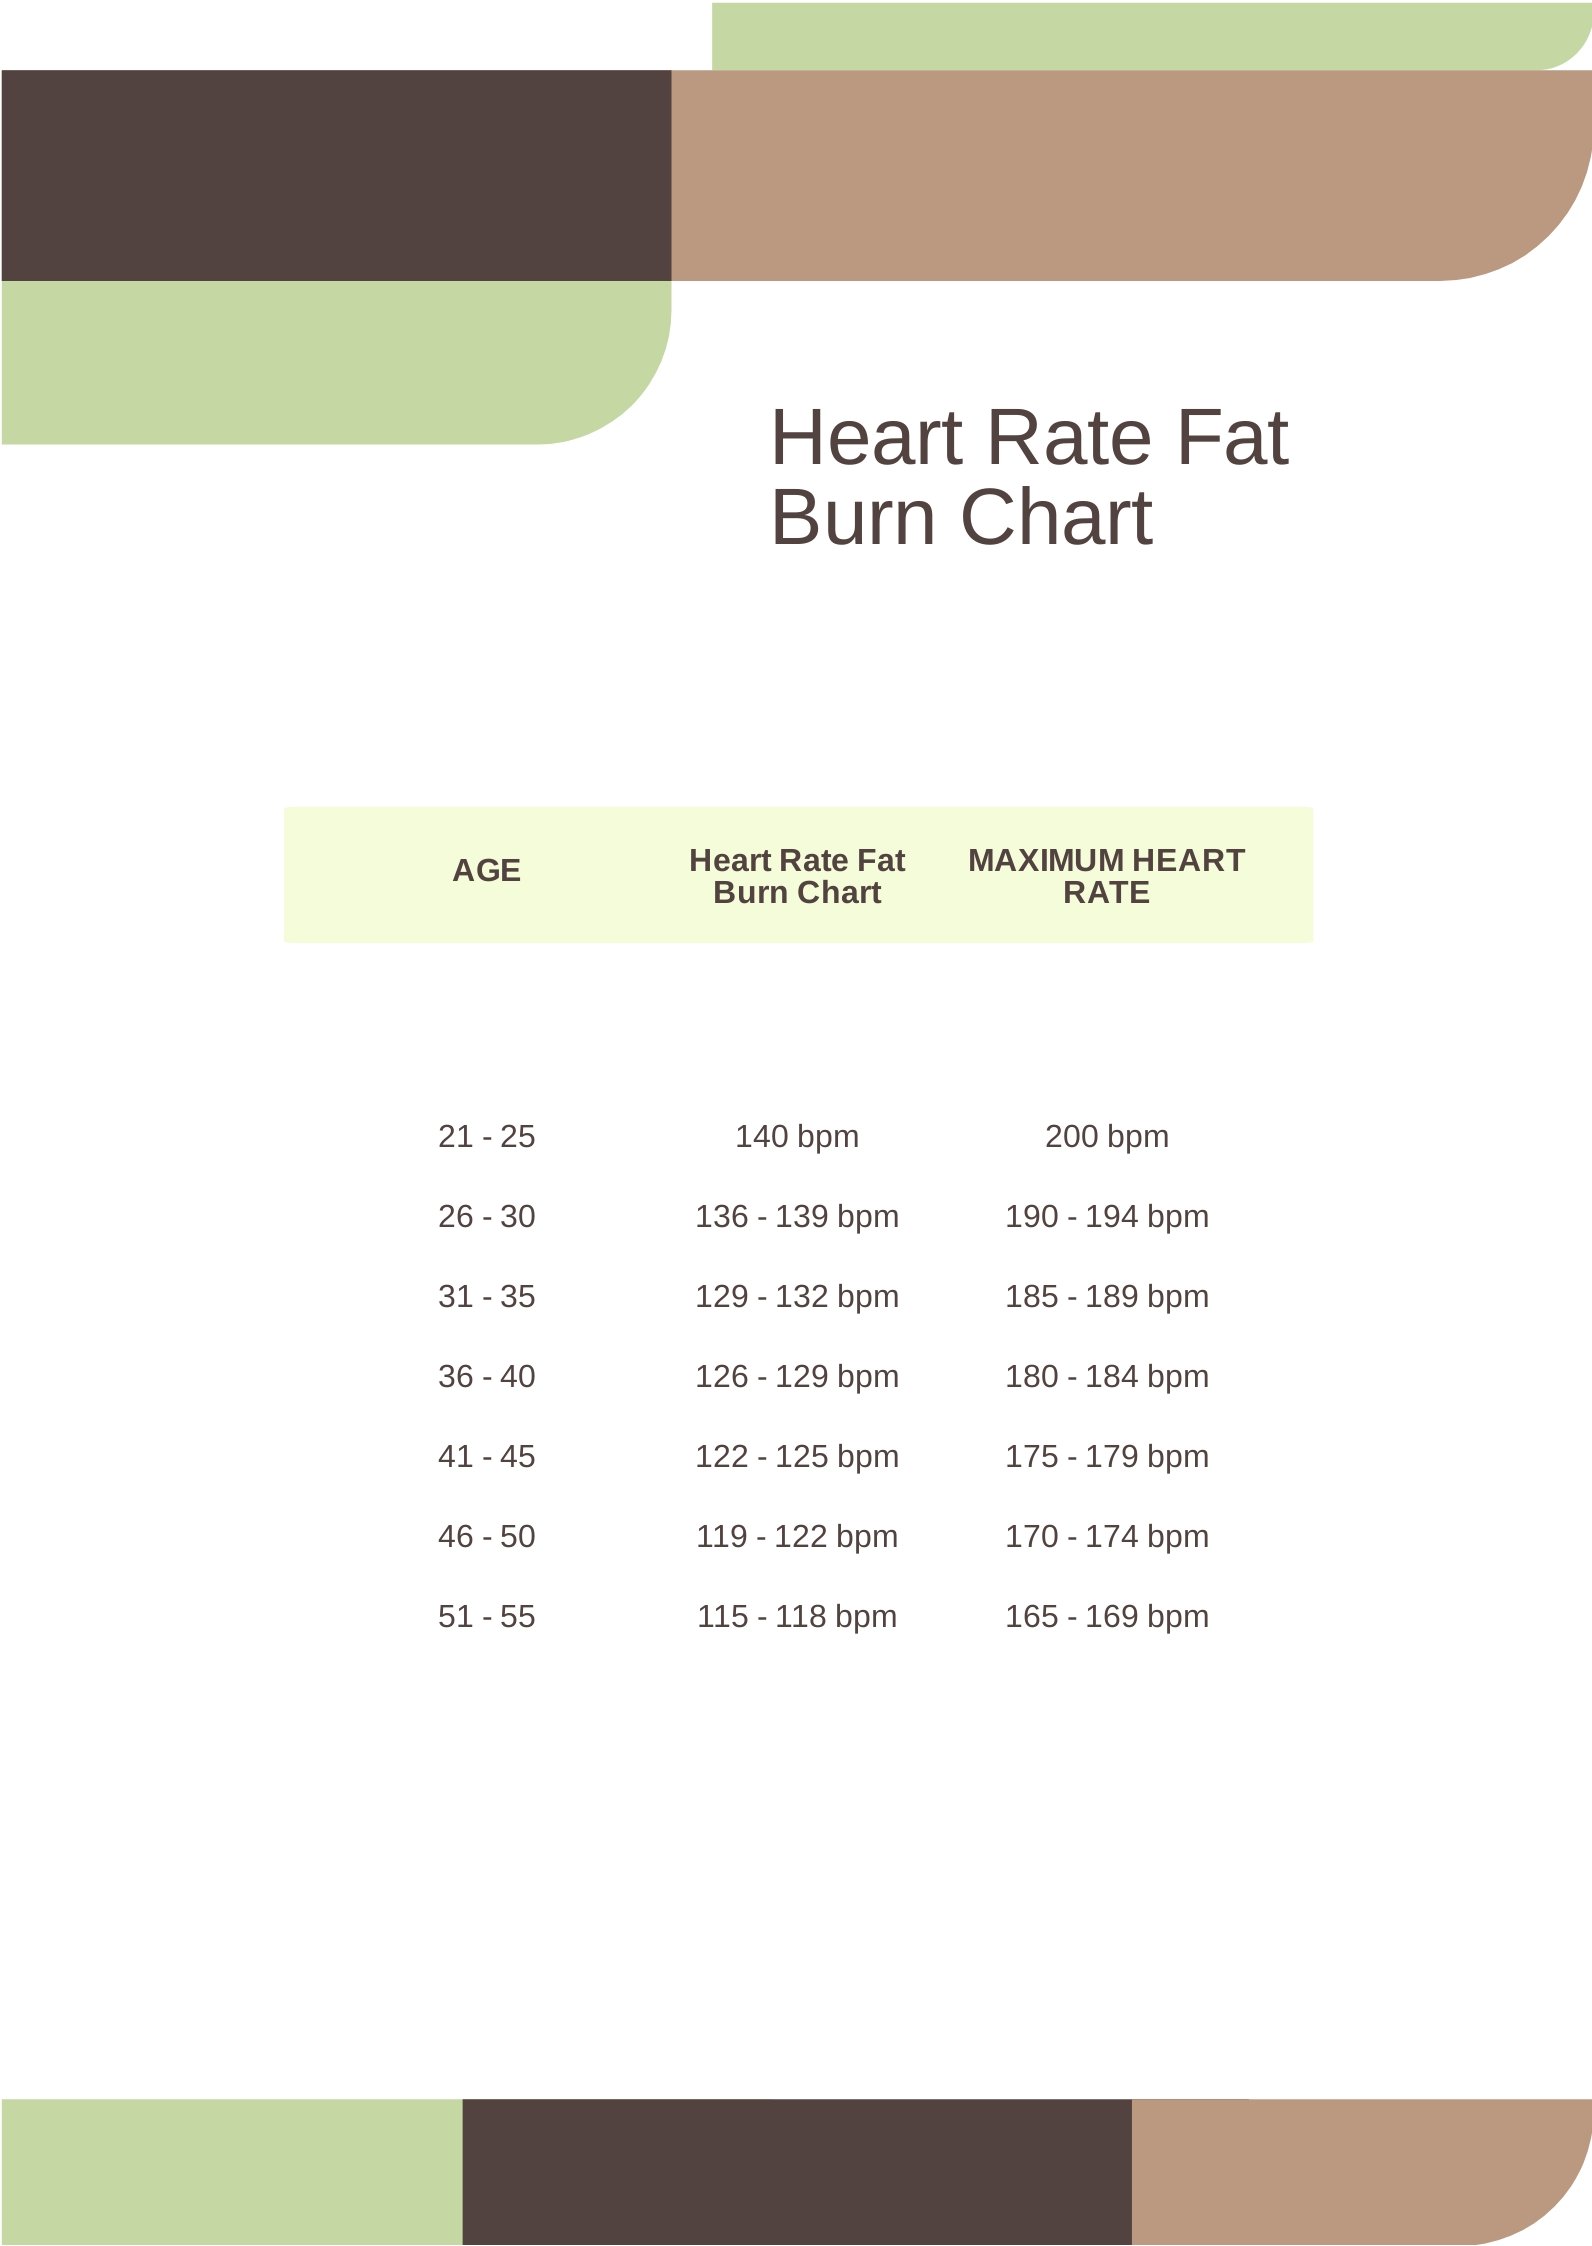 Heart Rate Fat Burn Chart Xyyfh 